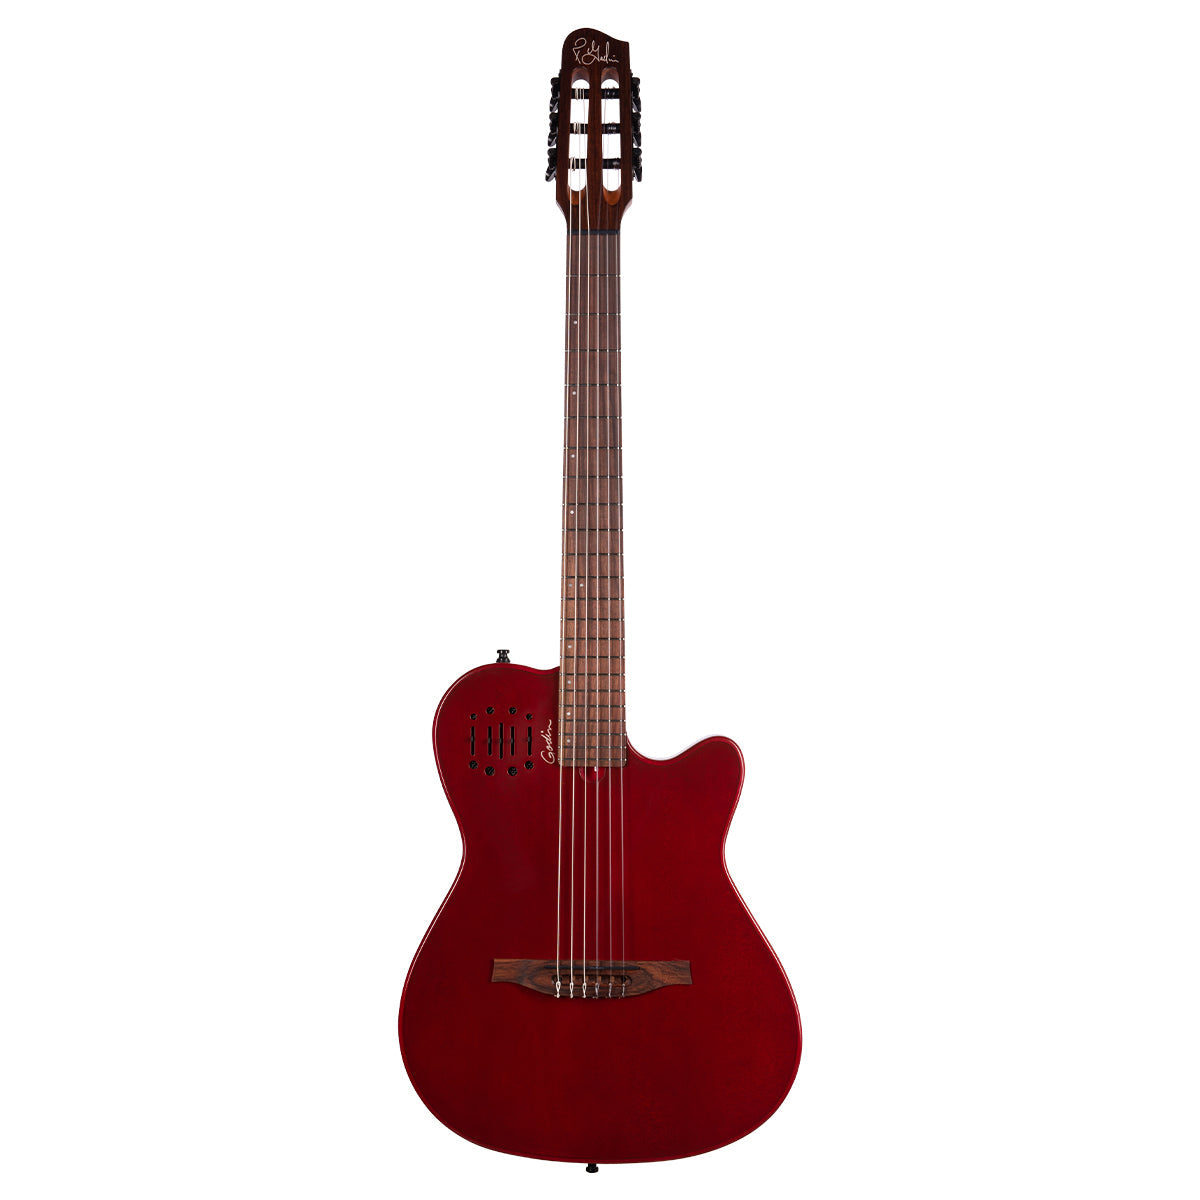 Godin Multiac Mundial Electric Guitar ~ Arctik Red, Electric Guitar for sale at Richards Guitars.